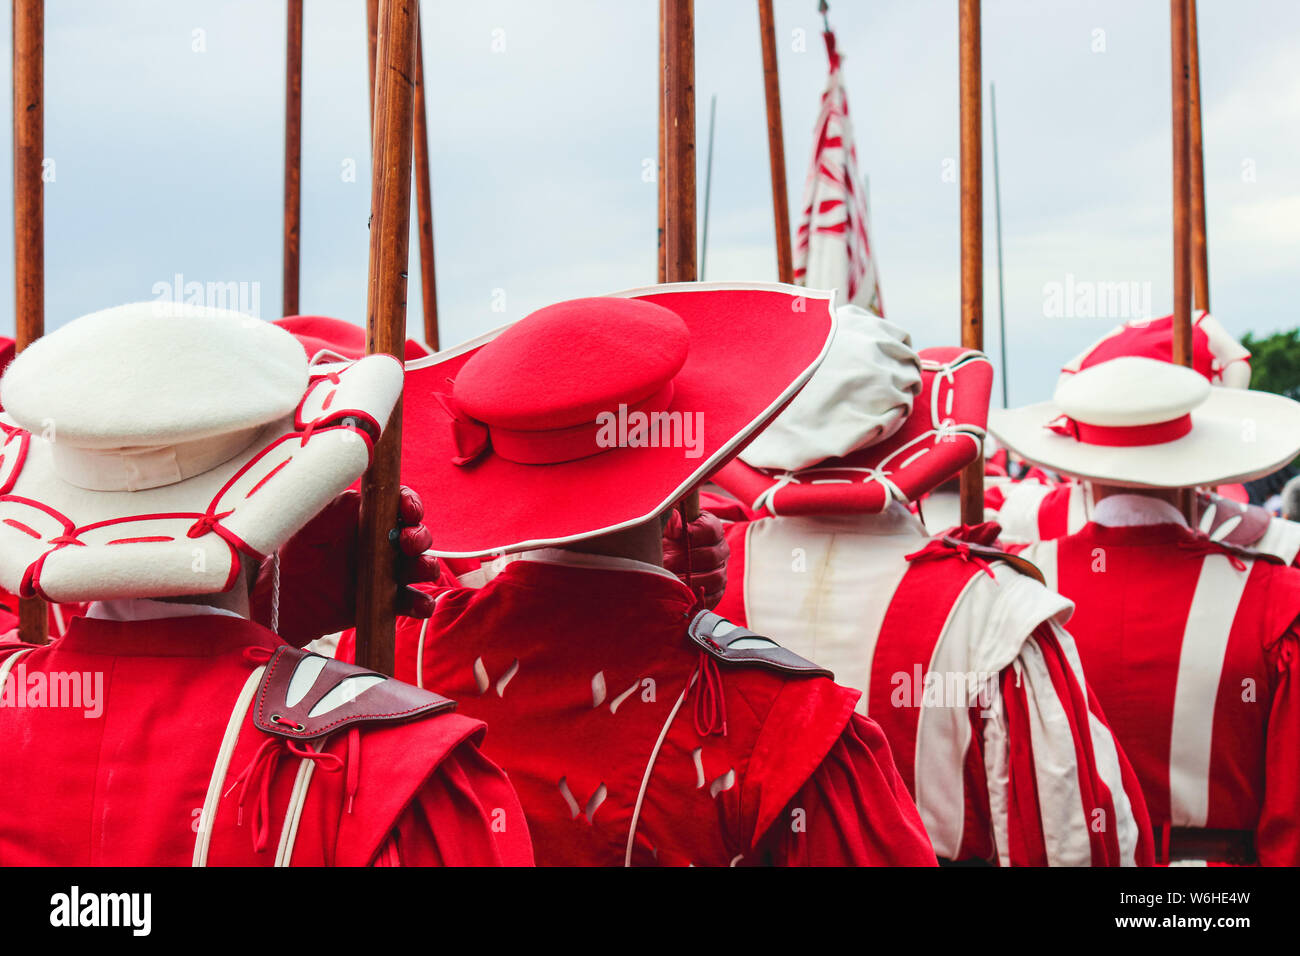 Die traditionelle Parade am Schweizer Nationalfeiertag. Nationalfeiertag  der Schweiz, am 1. August. Feier der Gründung der Eidgenossenschaft. Tag  der Unabhängigkeit. Historische rot weiß Kostüme Stockfotografie - Alamy